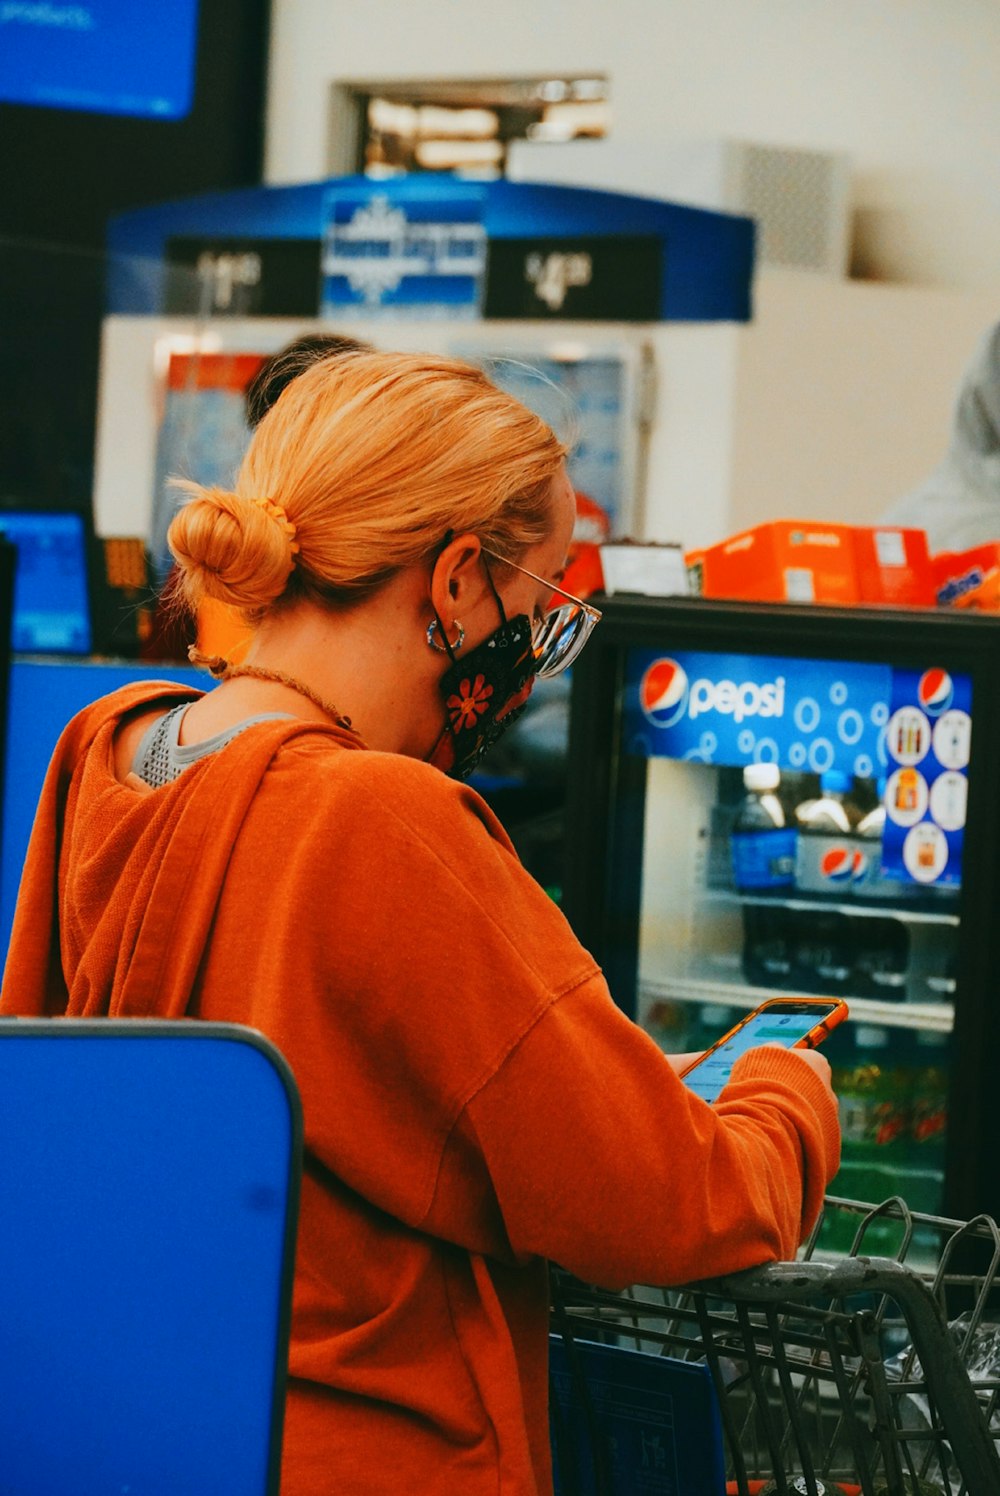 una donna che indossa una maschera facciale mentre fa shopping in un negozio